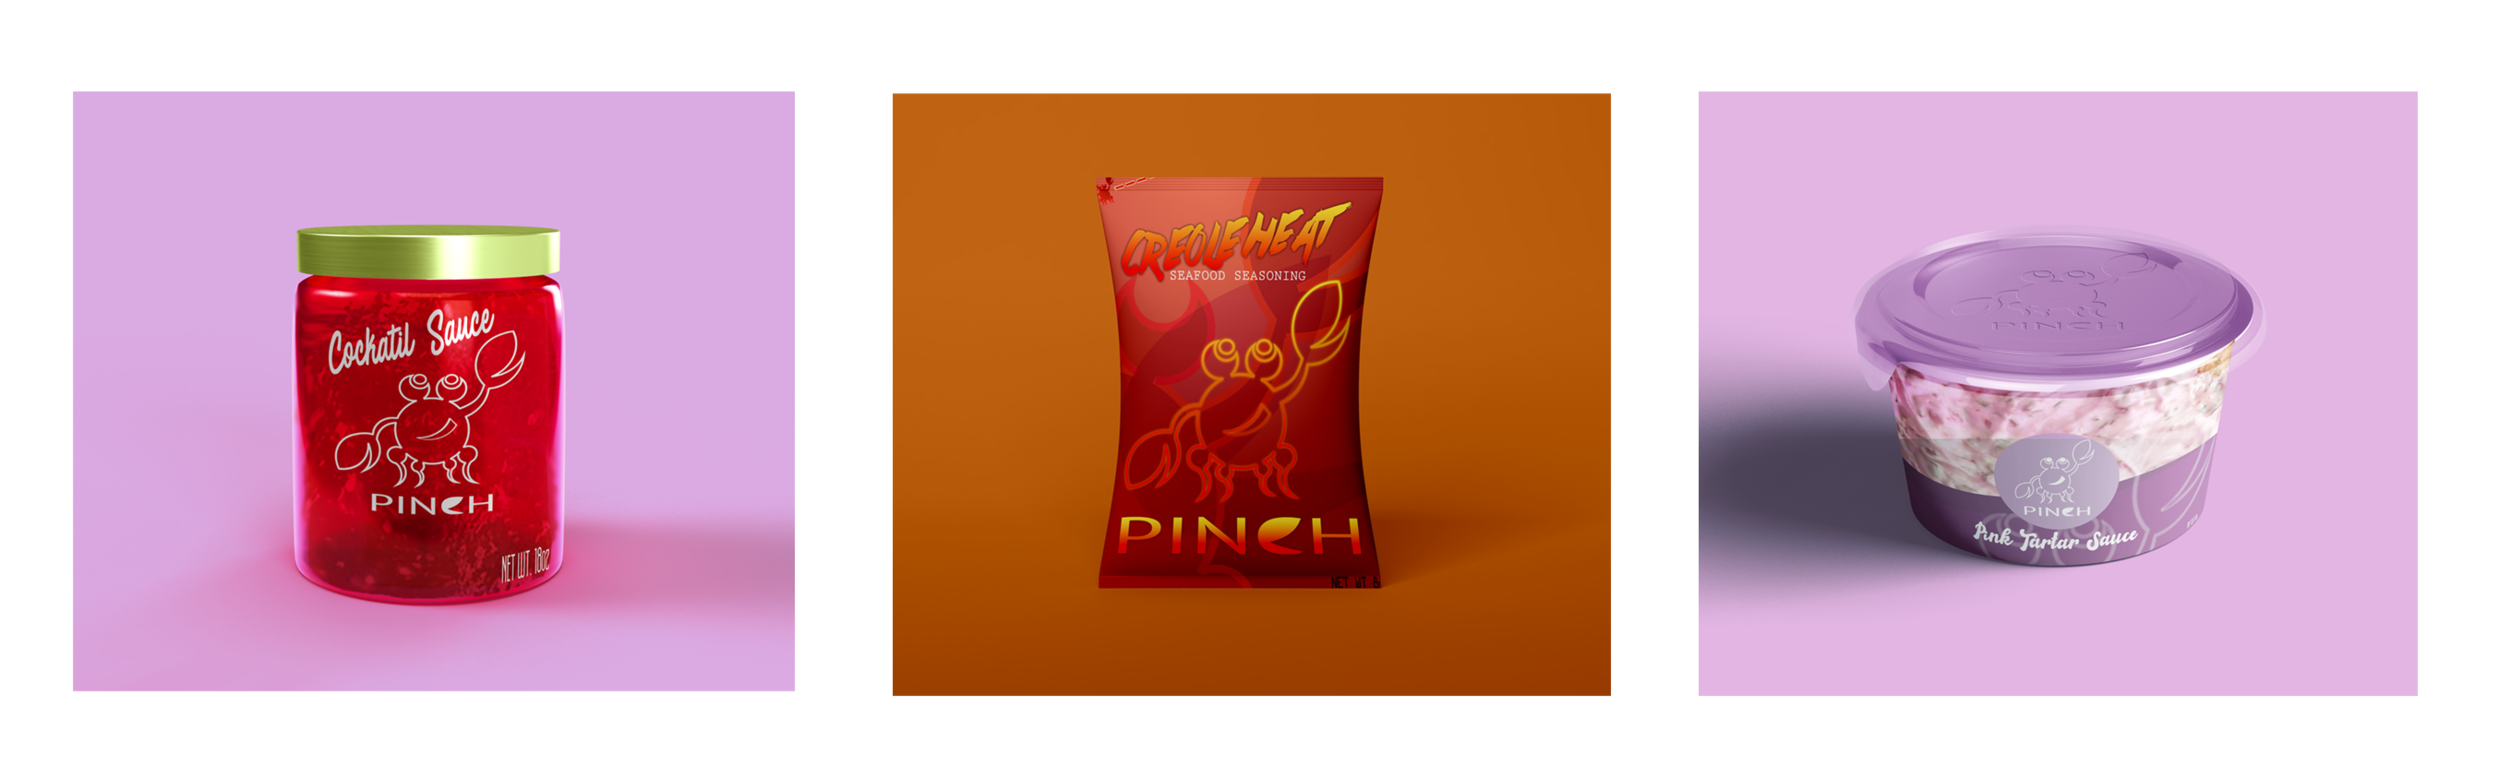 Pinch condiments logo design